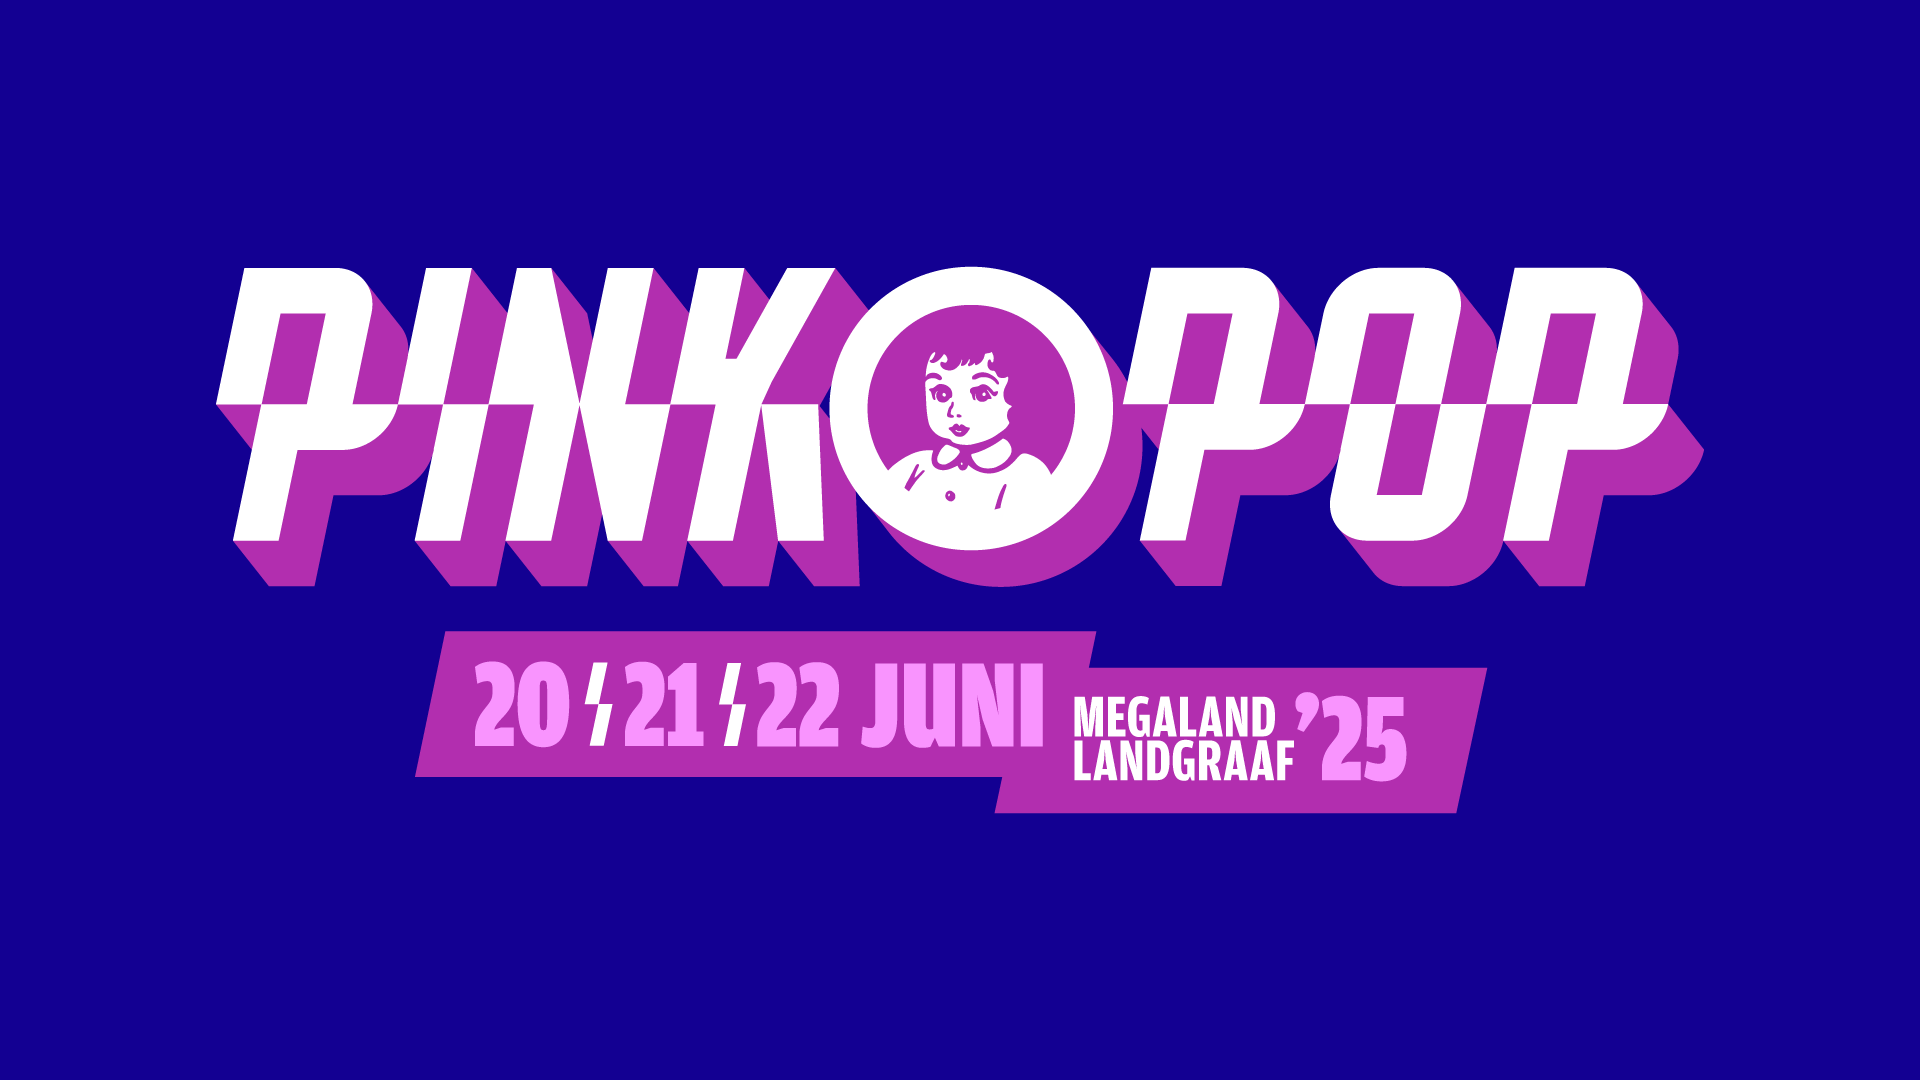 www.pinkpop.nl